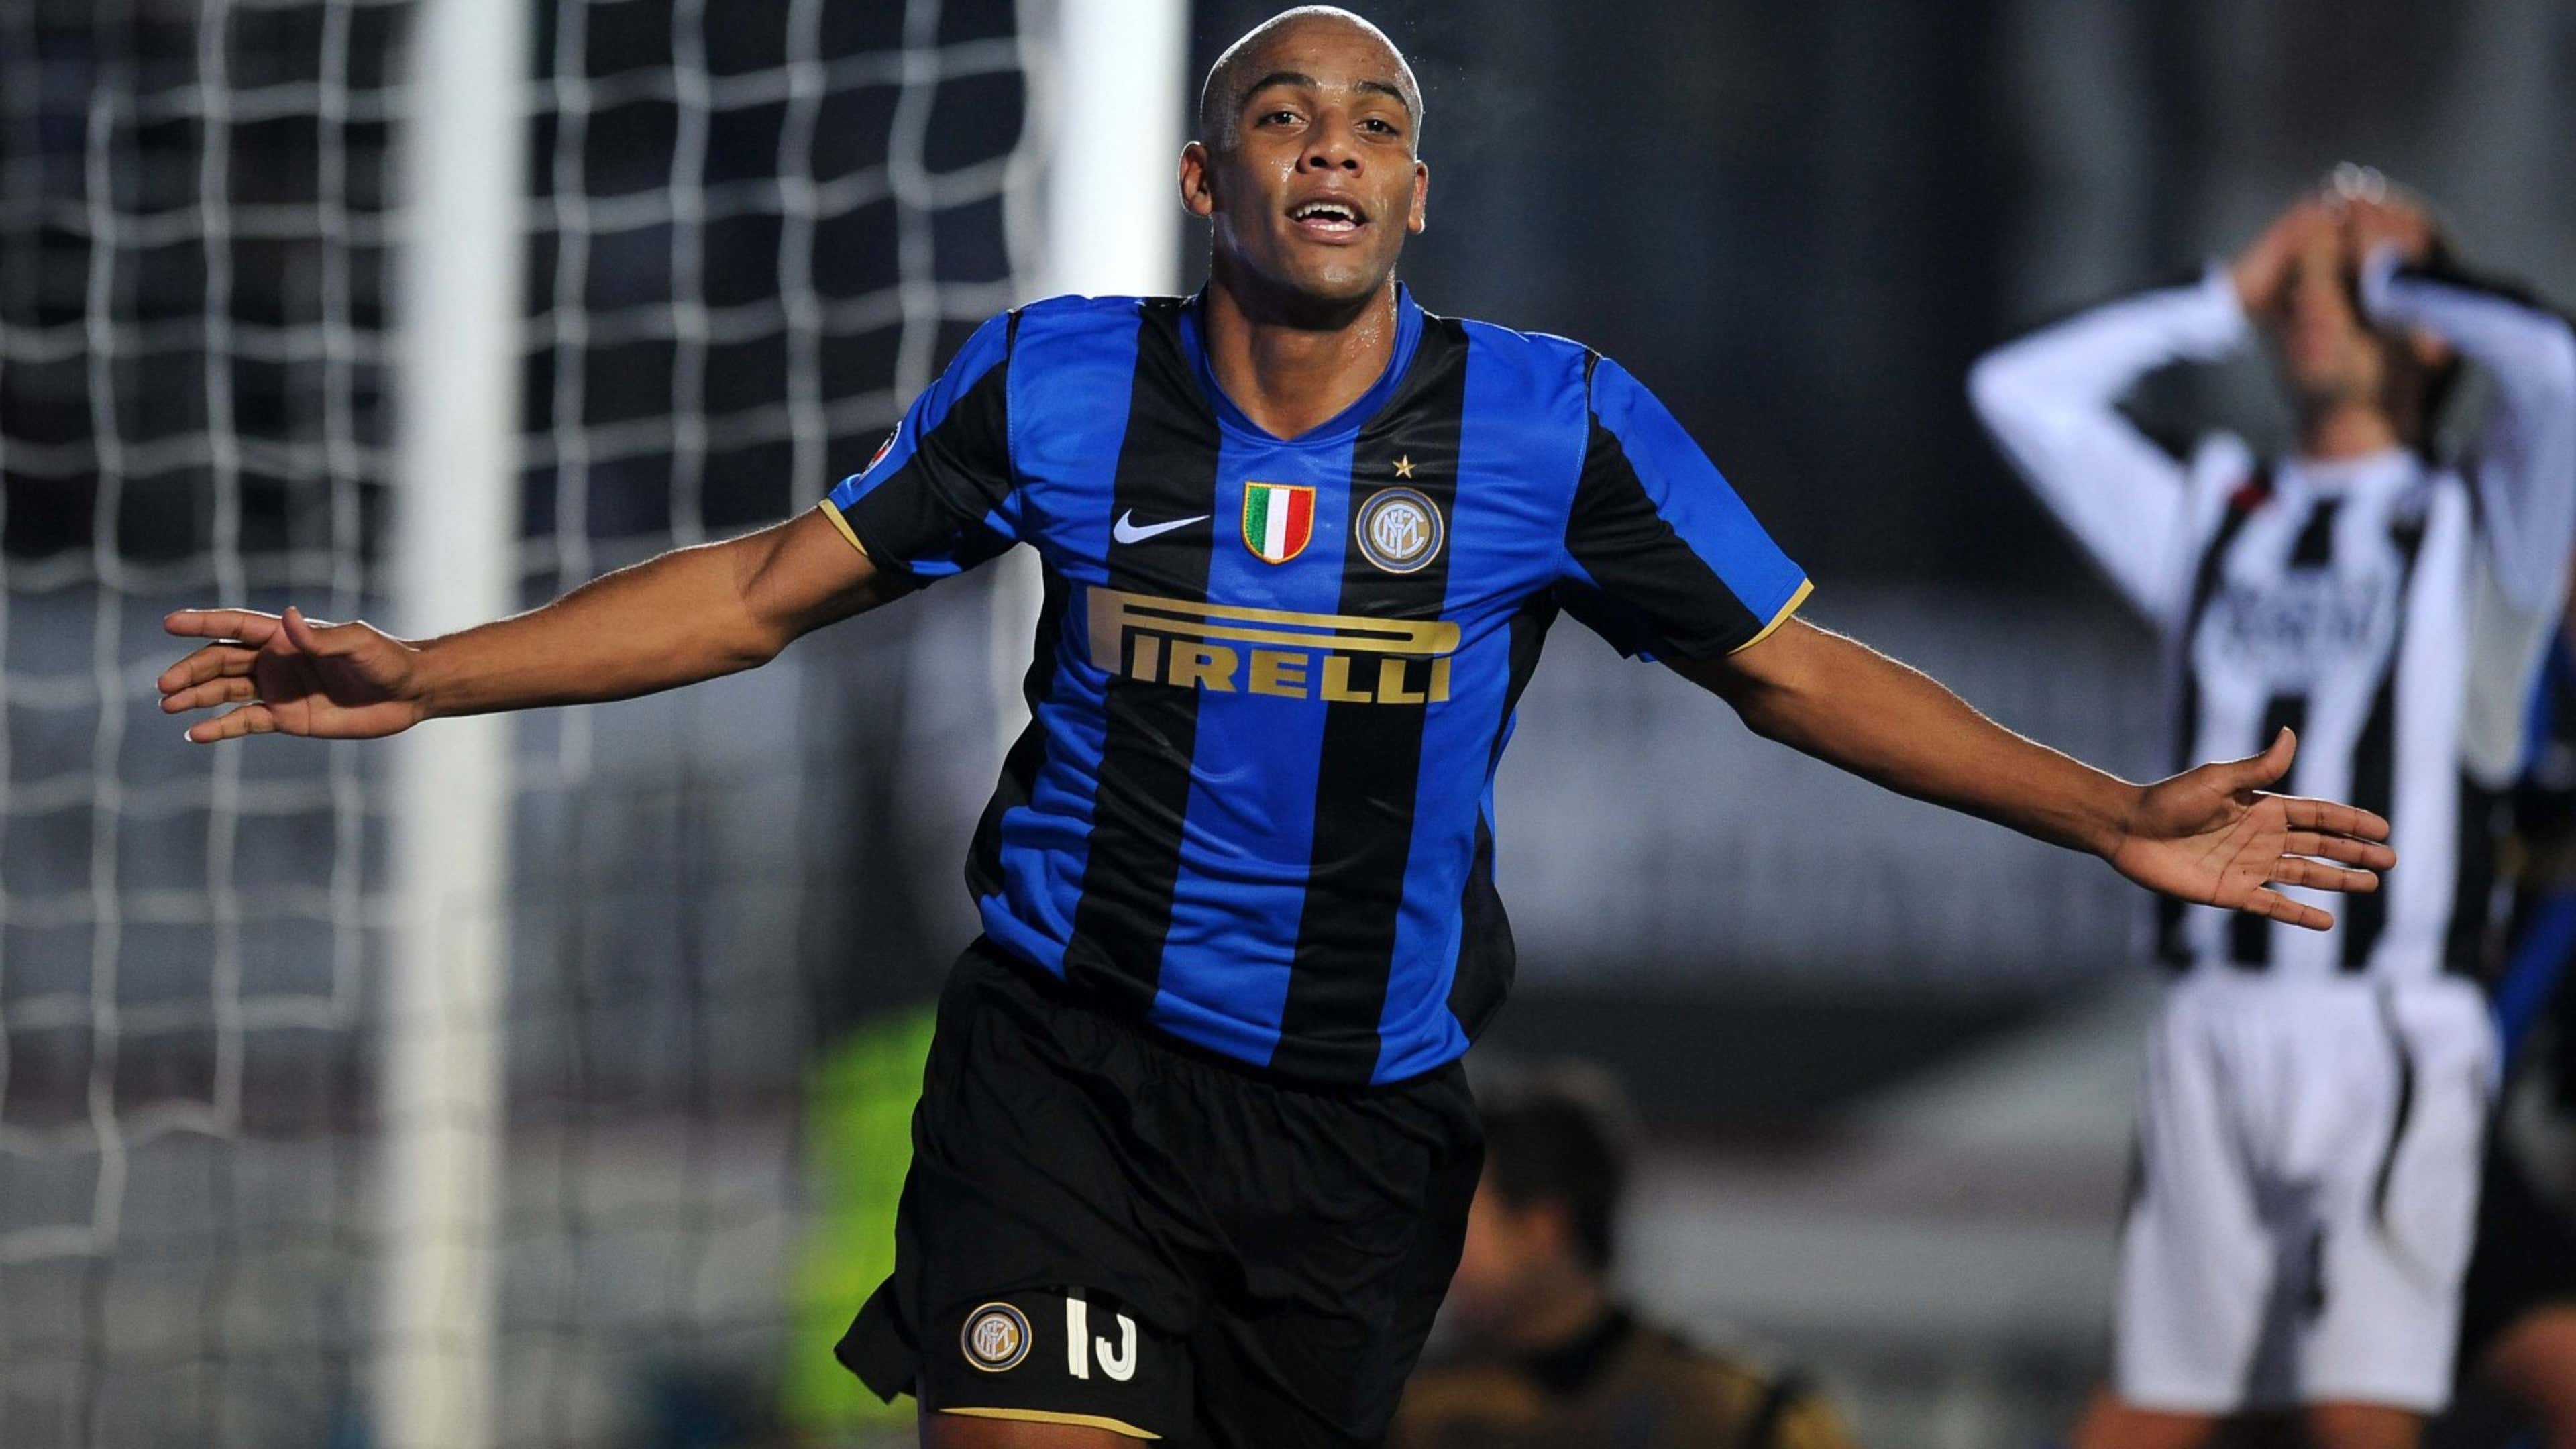 Football Club Internazionale Milano 2011-2012 - Wikipedia